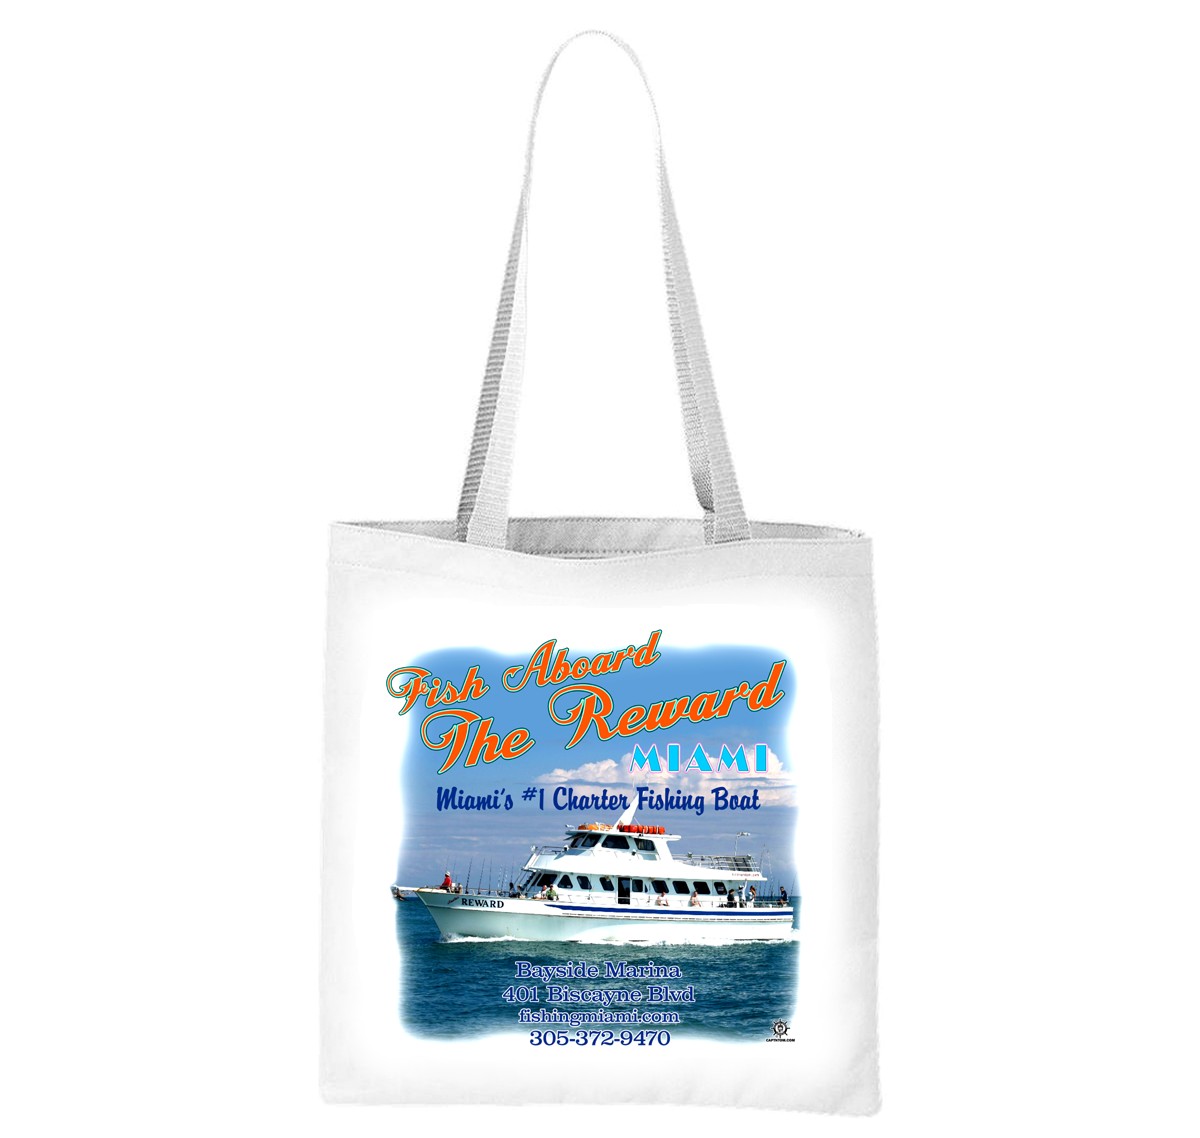 The Reward Party Fishing Boat Liberty Bag